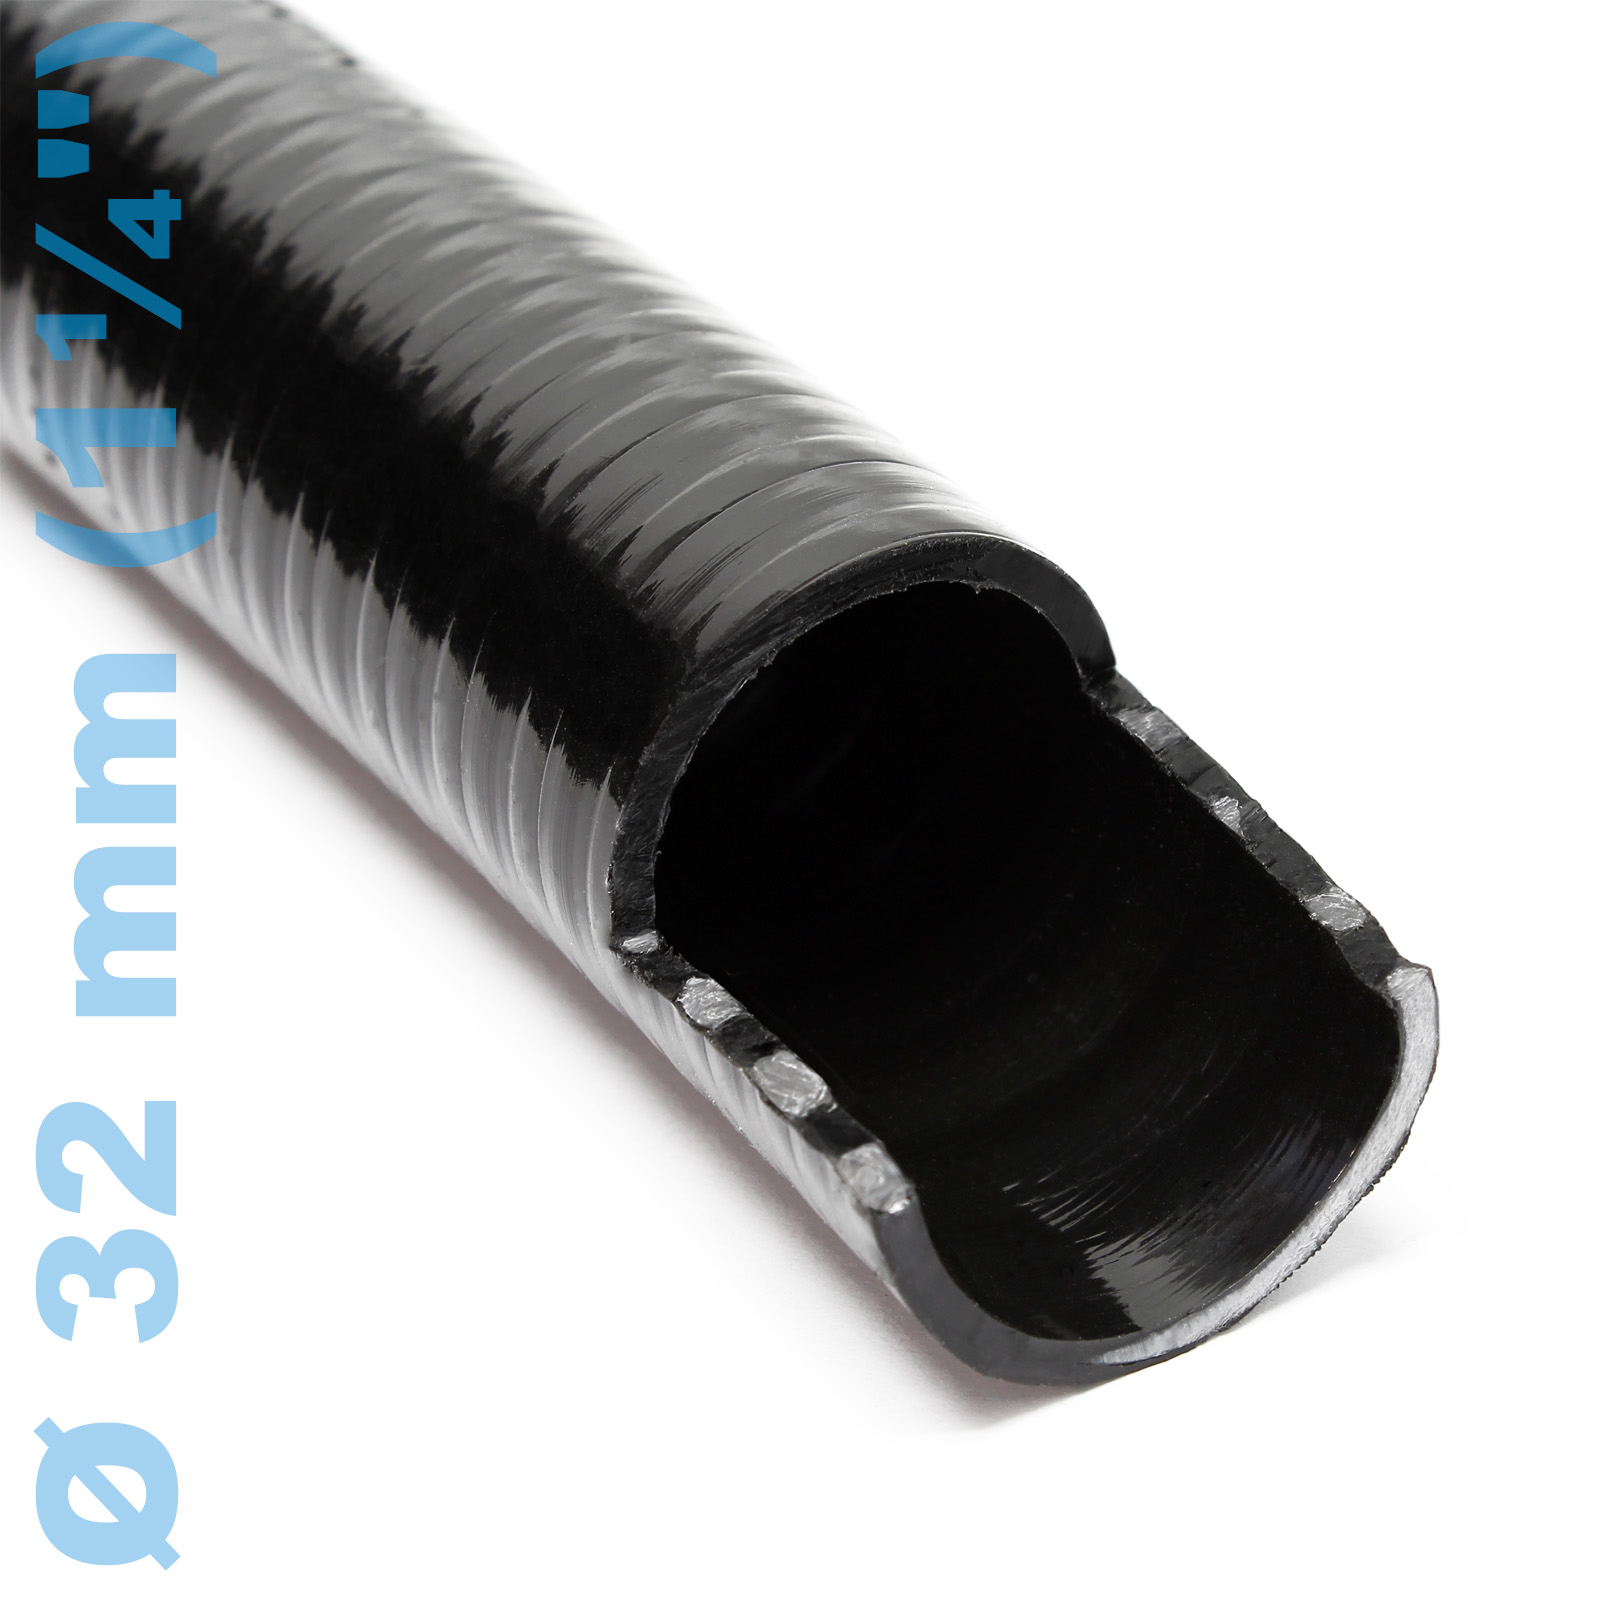 Tuyau pneumatique PVC diamètre 10mm - Longueur 1 mètre par CONSOGARAGE -  2,99 € TTC